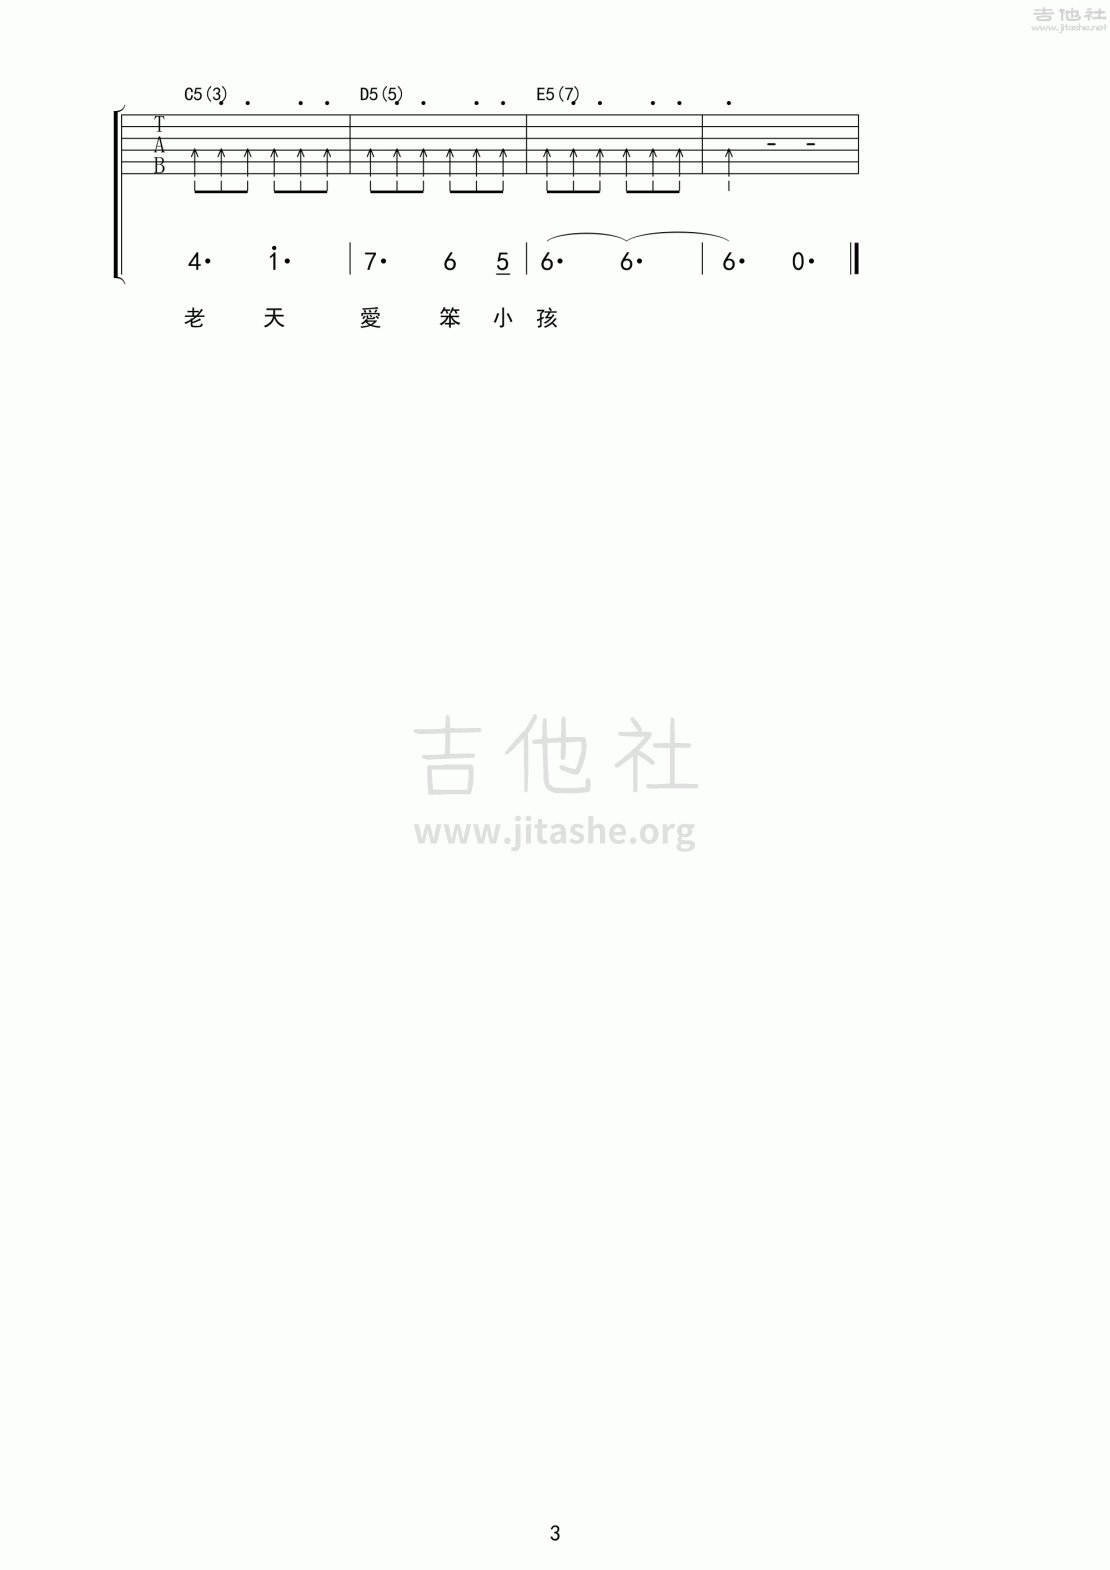 打印:笨小孩吉他谱_刘德华(Andy Lau)_笨小孩03.gif